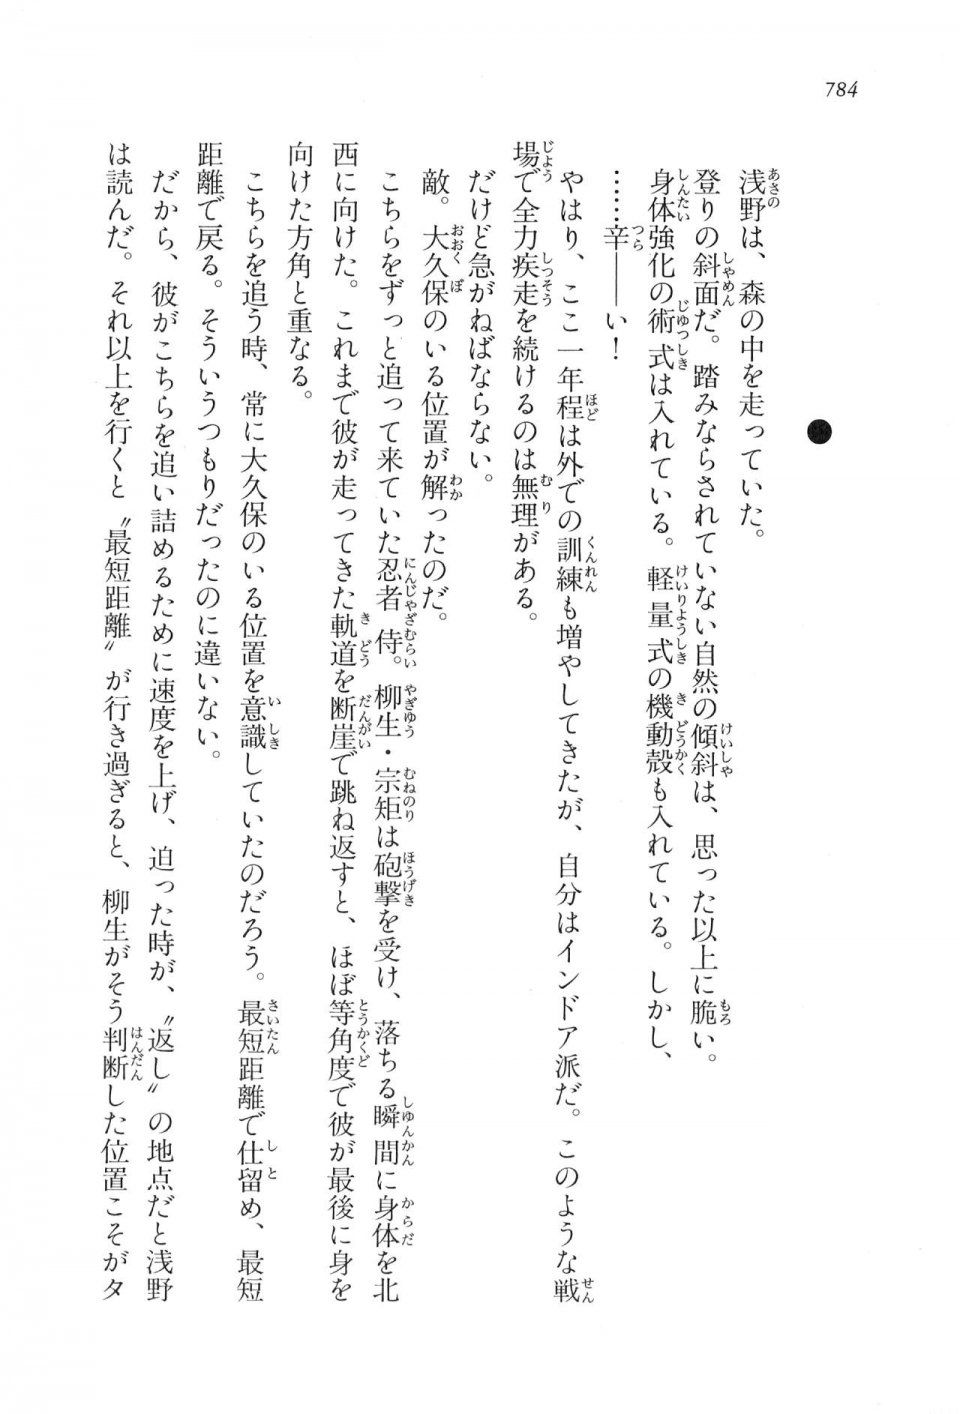 Kyoukai Senjou no Horizon LN Vol 17(7B) - Photo #786